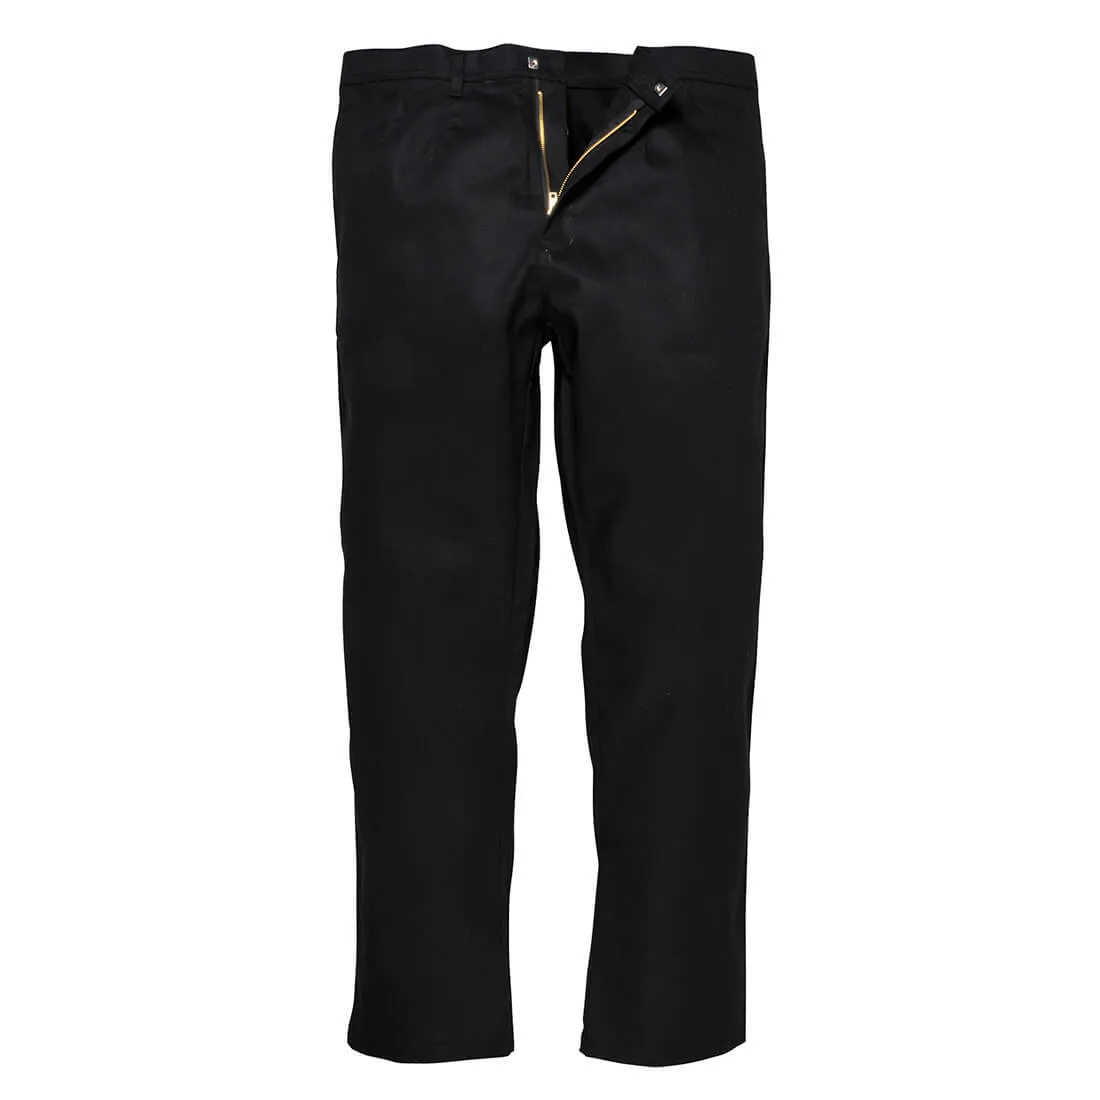 Biz Weld Mens Flame Resistant Trousers - Black, Medium, 32"